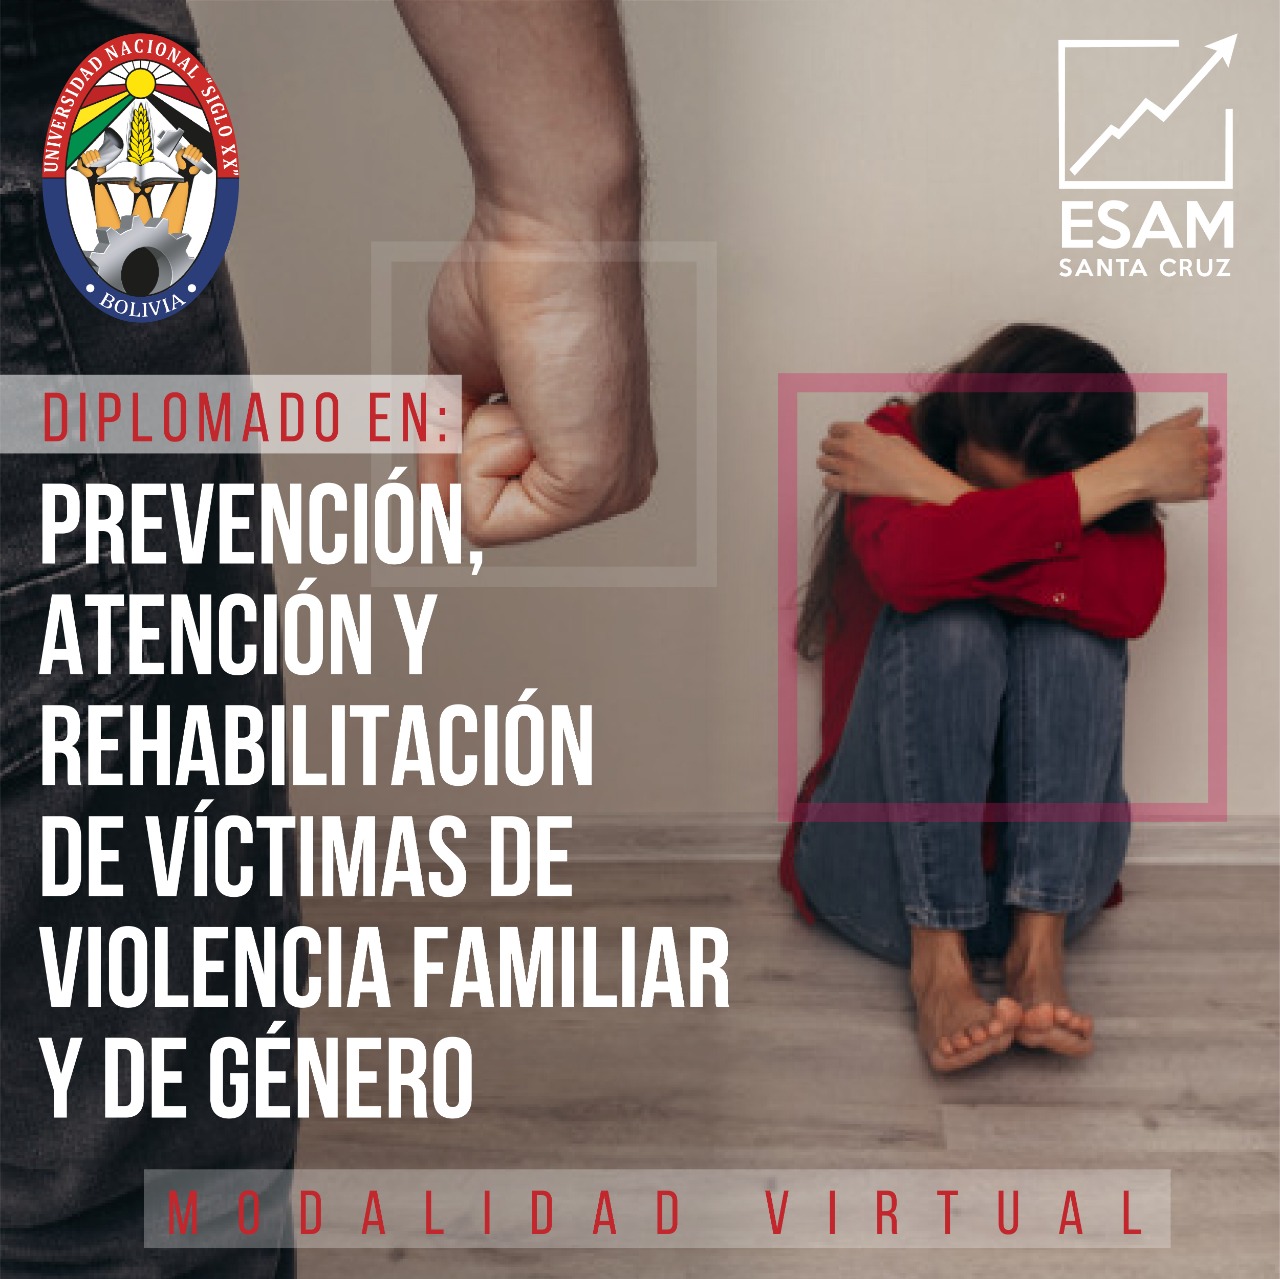 Diplomado Prevencion, Atencion Y Rehabilitacion De Victimas De Violencia Familiar Y De Género